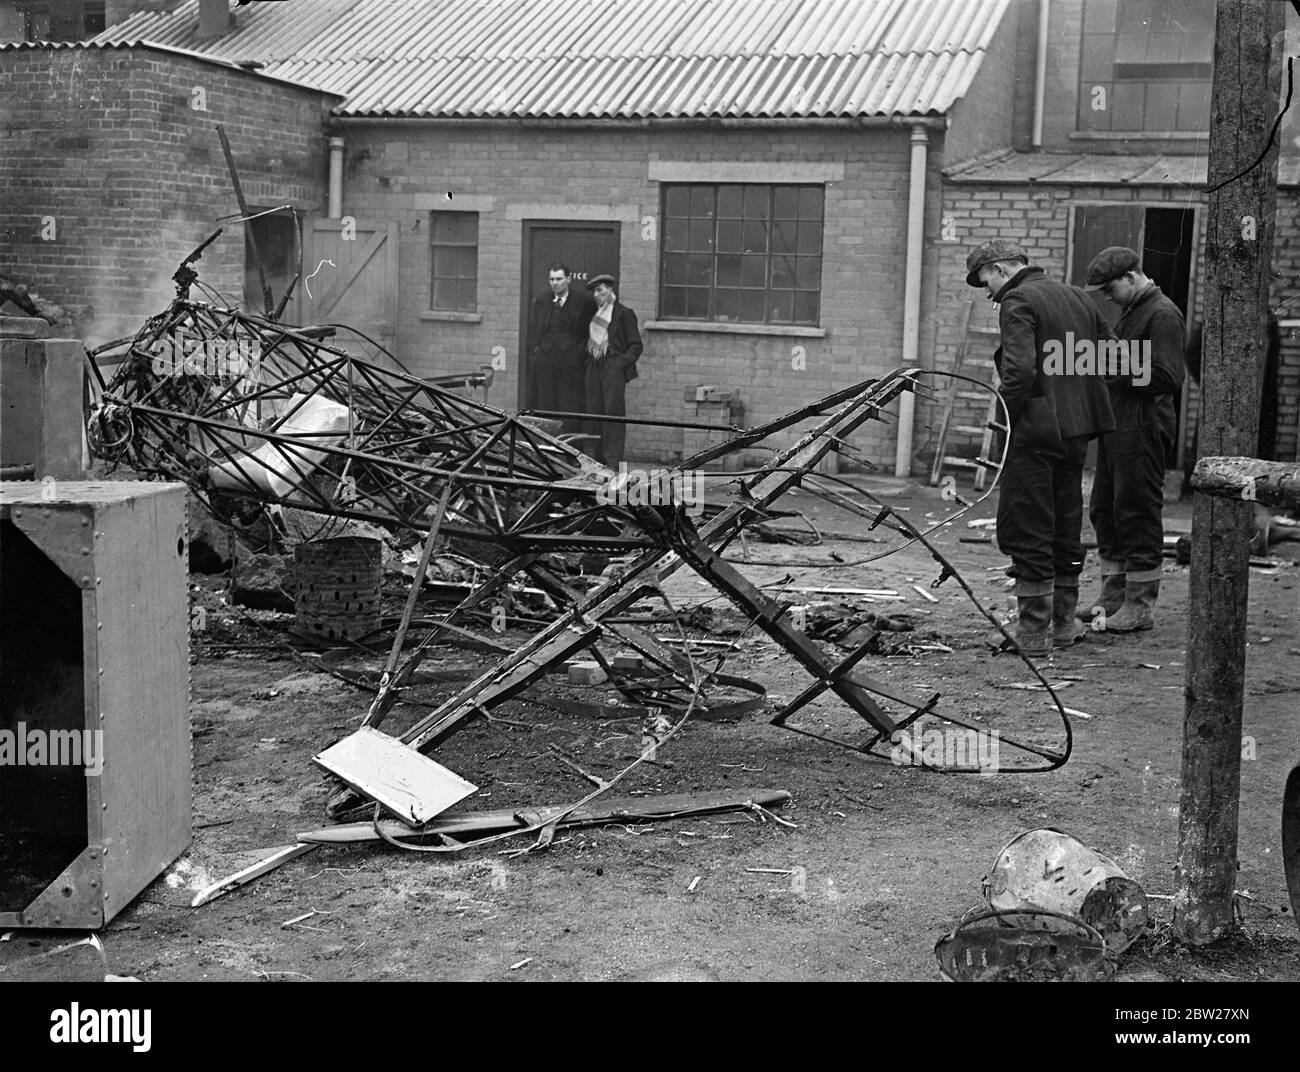 Tre muoiono quando RAF e il piano civile si scontrarono su Hertfordshire. Gli aerei si schiantano in muratura. Tre uomini, un ufficiale RAF e un istruttore pilota e un allievo sono stati uccisi quando un aereo Gloucester Gauntlet da Duxford e un aereo de Havilland Tiger Moth collidarono a mezz'aria e si schiantarono in fiamme a Smallford, vicino St Albans, Hertfordshire. L'aereo di servizio cadde in un campo adiacente a un brickyard e la macchina civile, si schiantò in una fossa di ghiaia, causando 20 uomini a correre per la loro vita. Foto mostra, il relitto aggrovigliato della Tigre civile Moth tra gli edifici della fossa di ghiaia. 21 gennaio 1938 Foto Stock